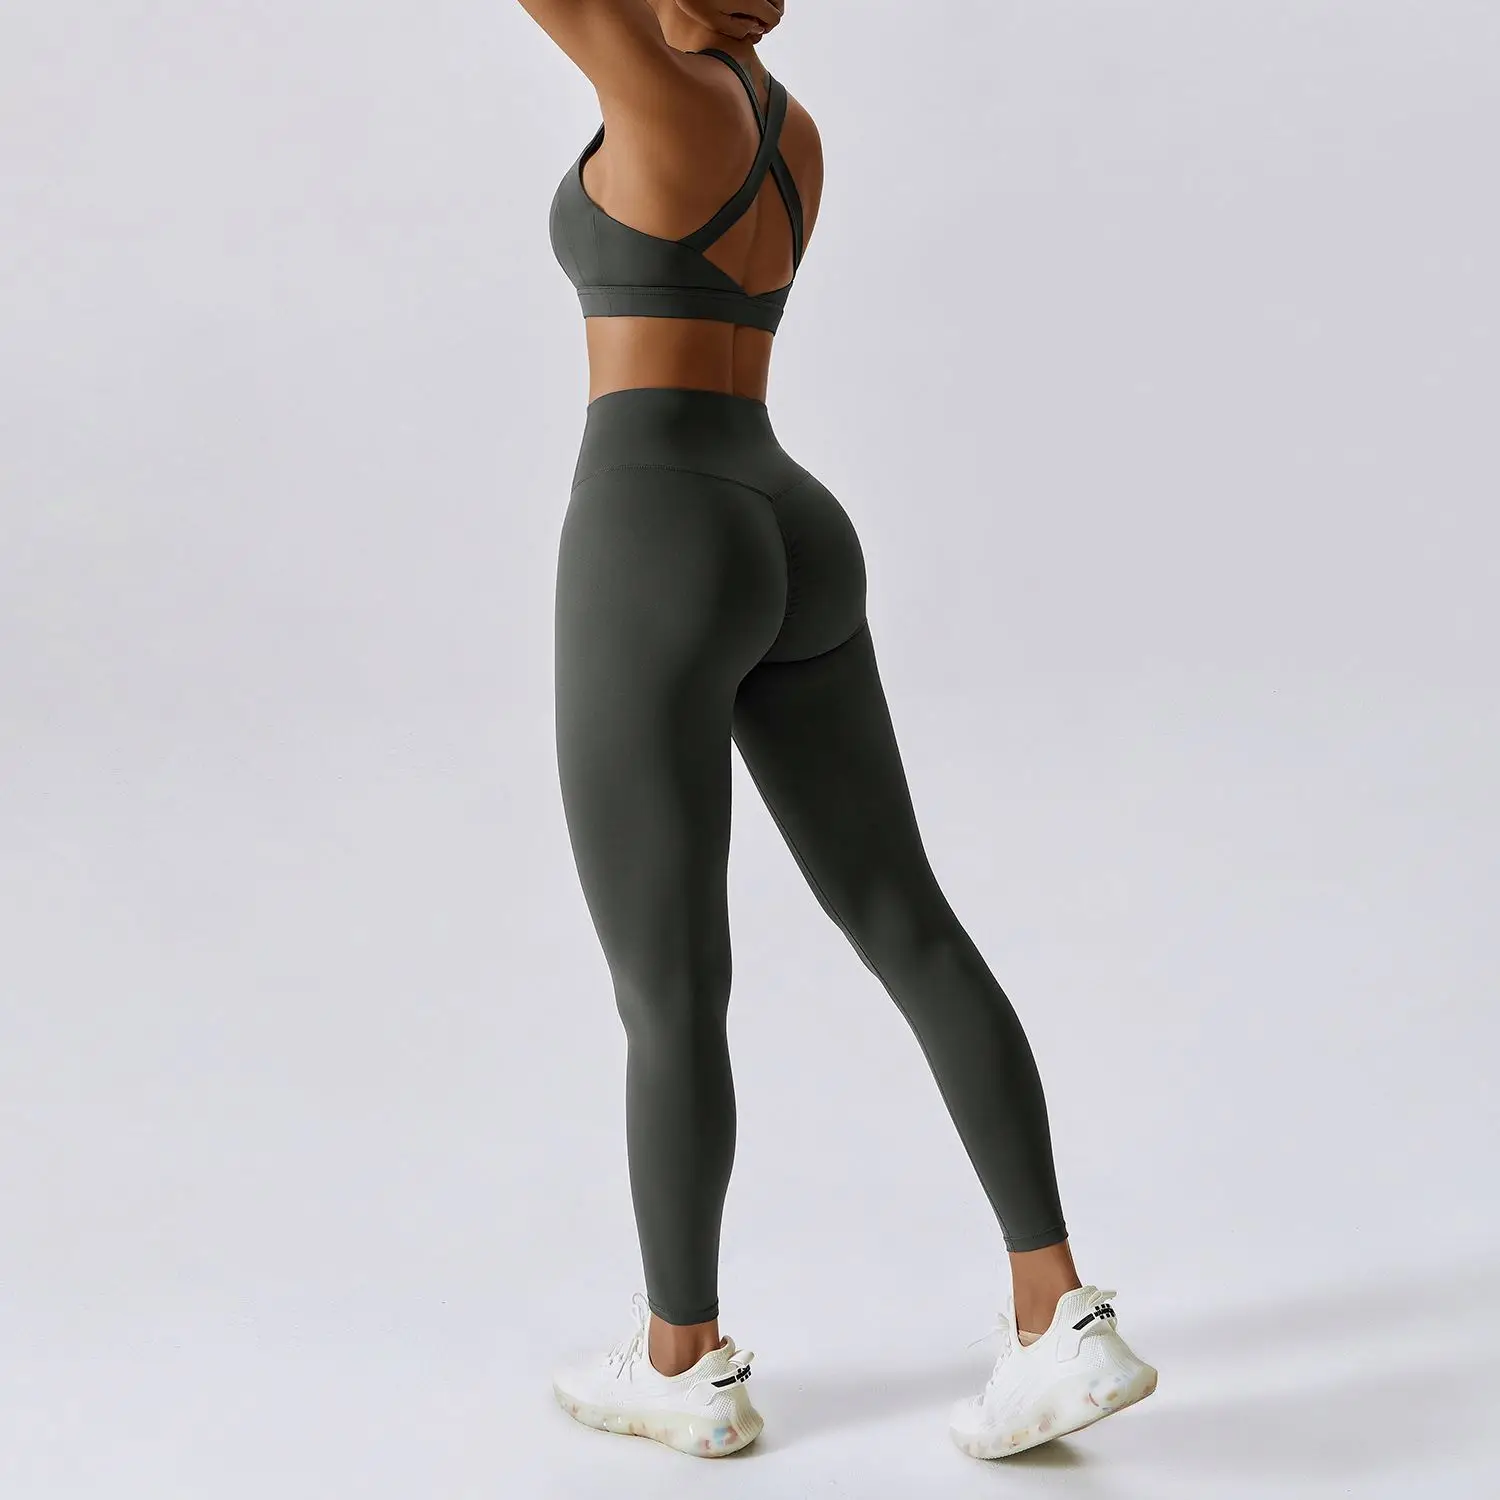 ECBC  New arrival sexy strap back sports bra & workout leggings pants 2-piece women yoga set